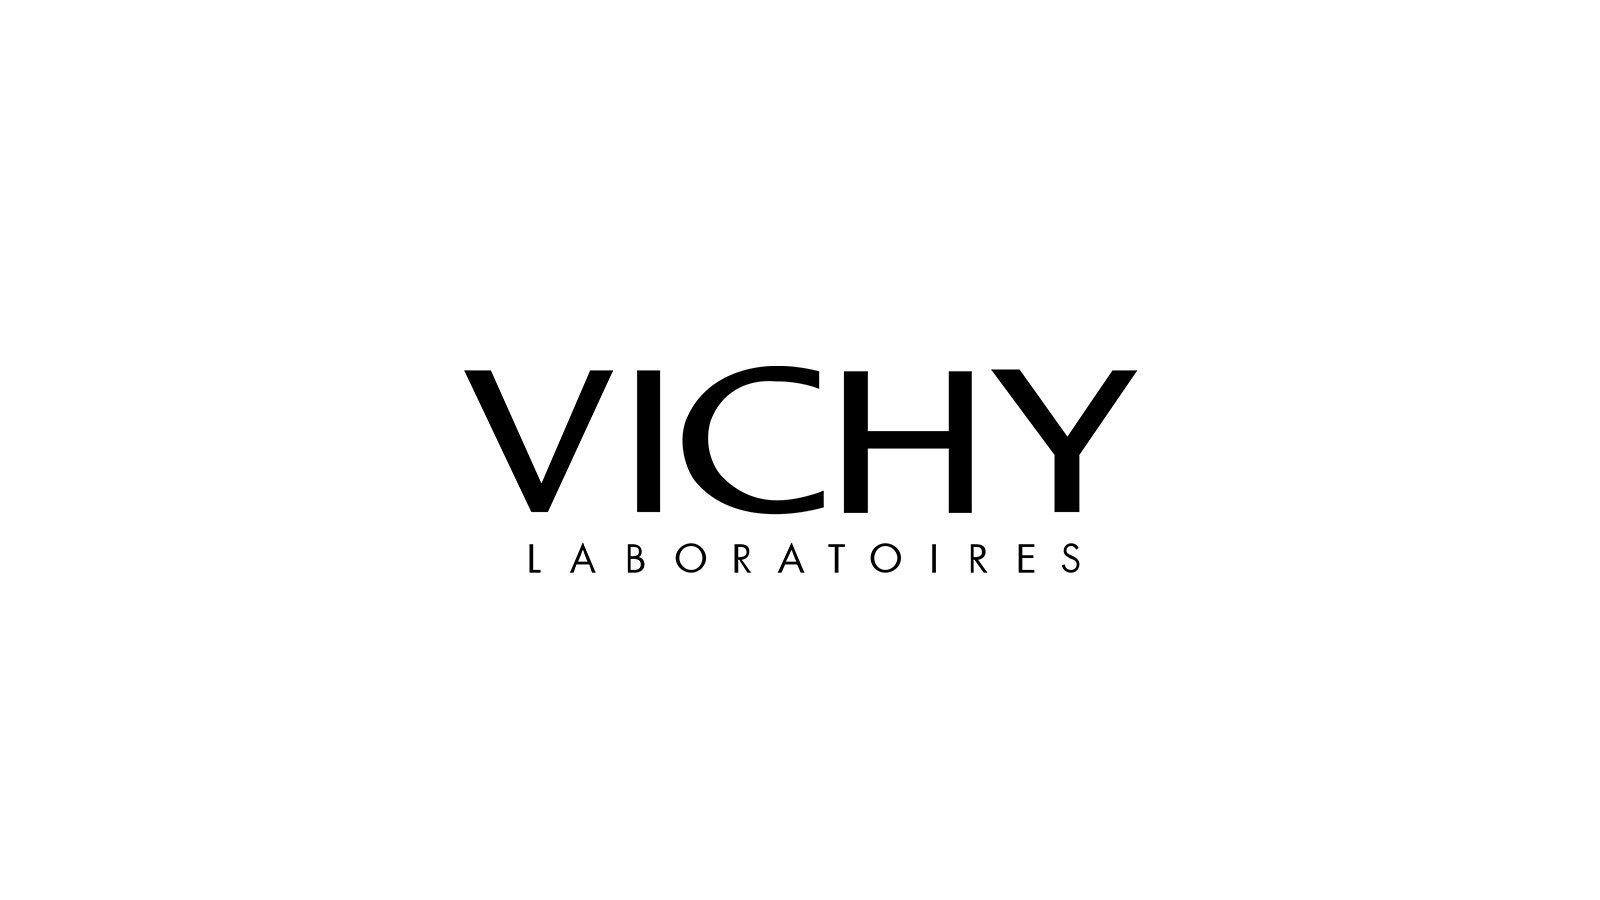 Copy of Vichy logo